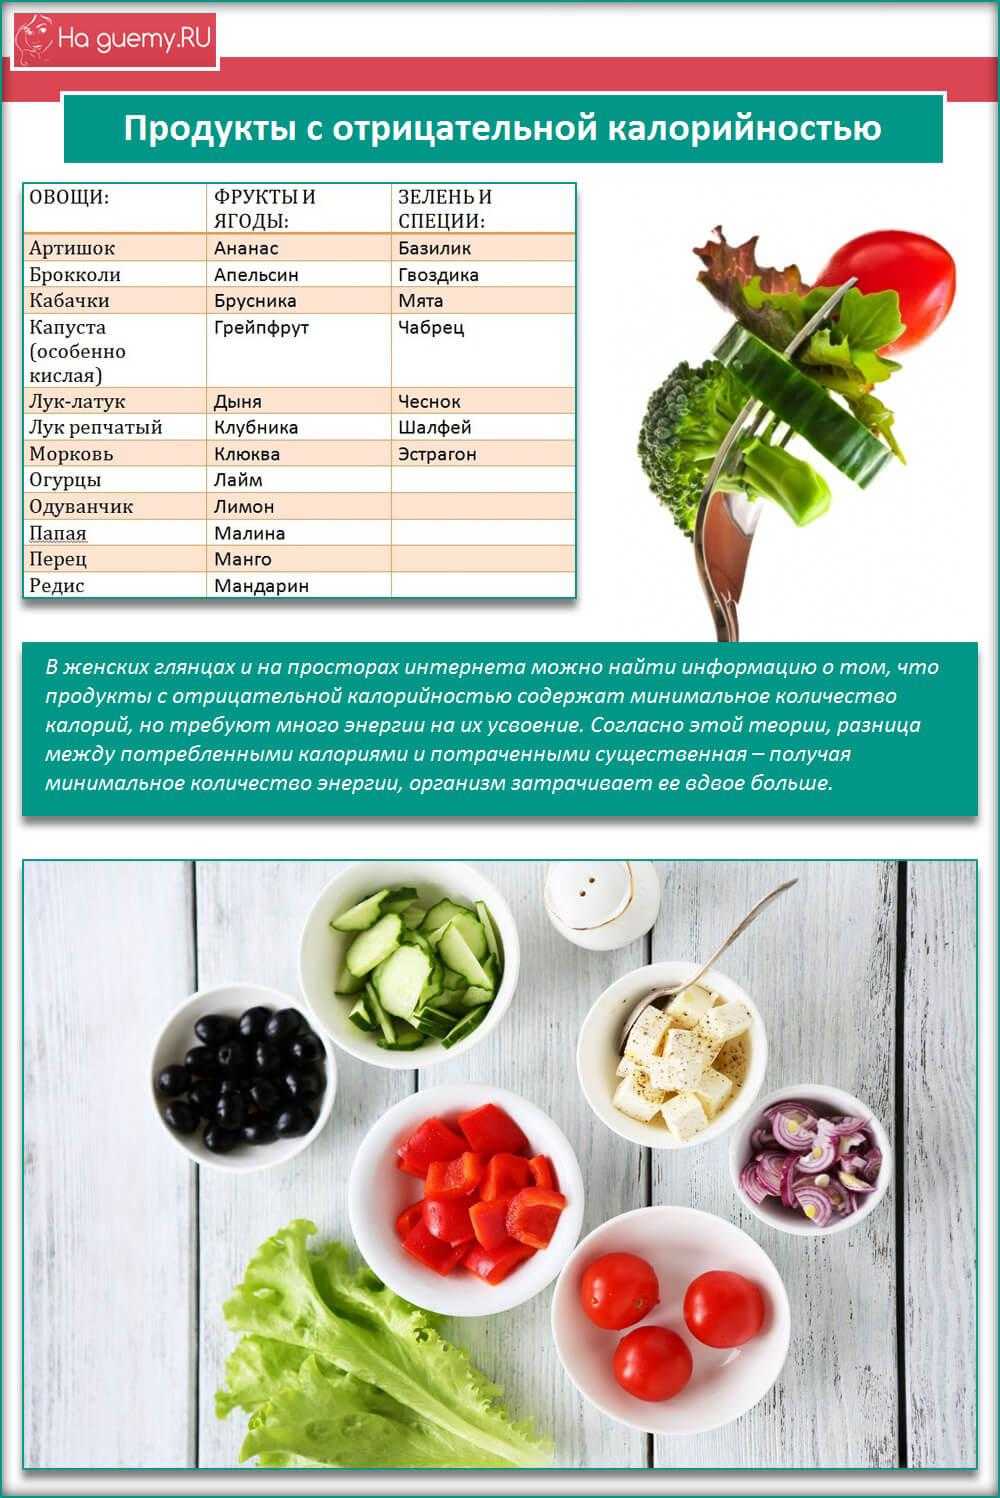 Отрицательная калорийность - список продуктов